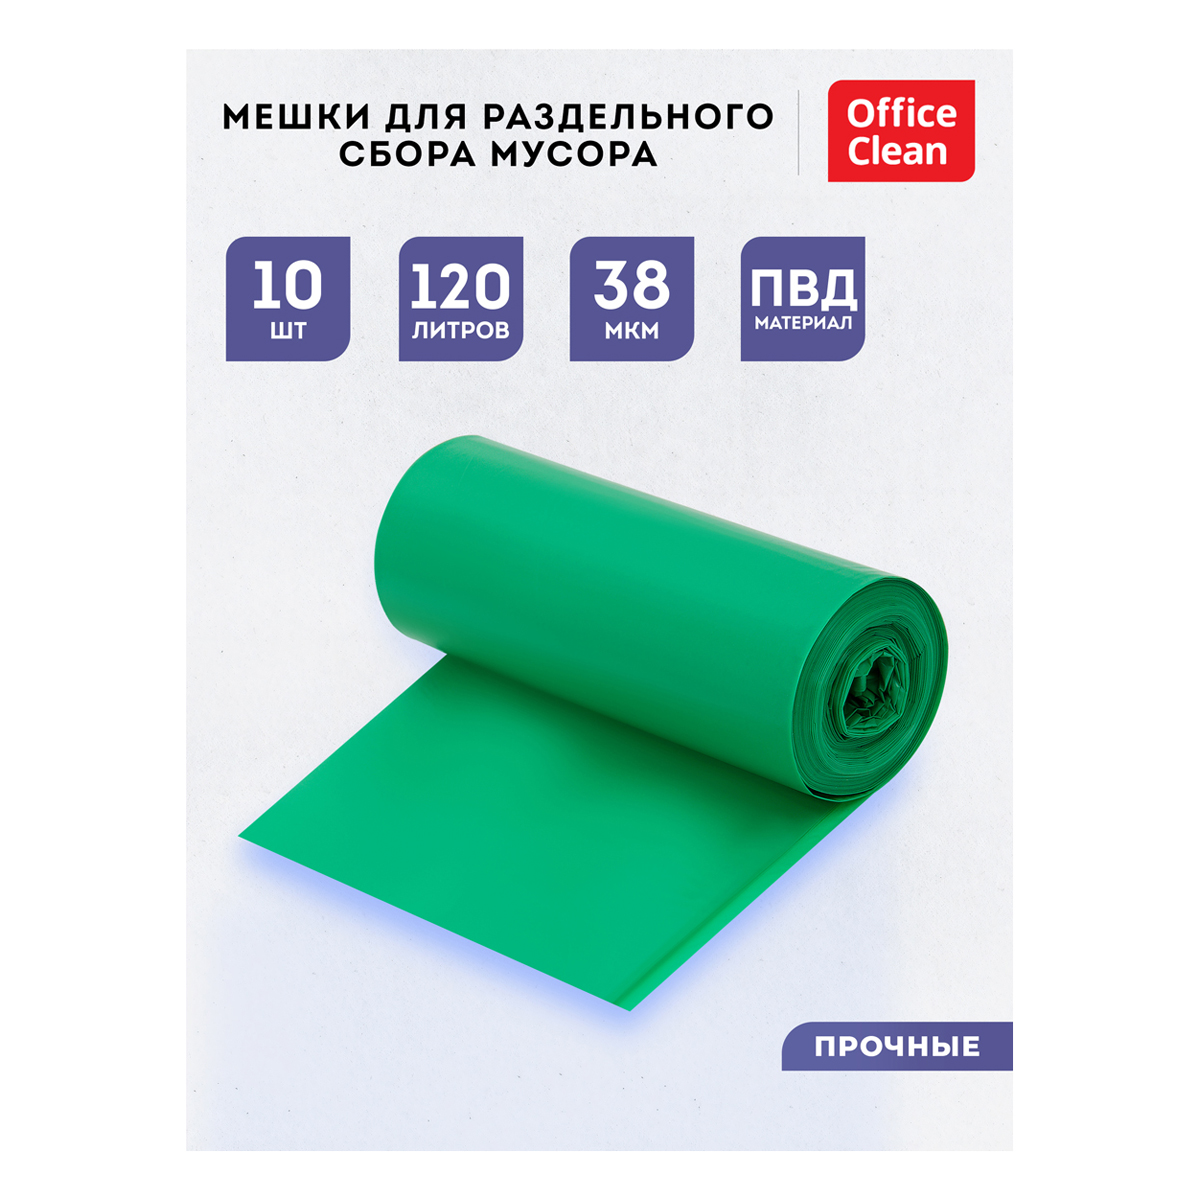 Мешки для раздельного сбора мусора 120л OfficeClean ПВД, 70*108см, 38мкм, 10шт., прочные, зеленые, в